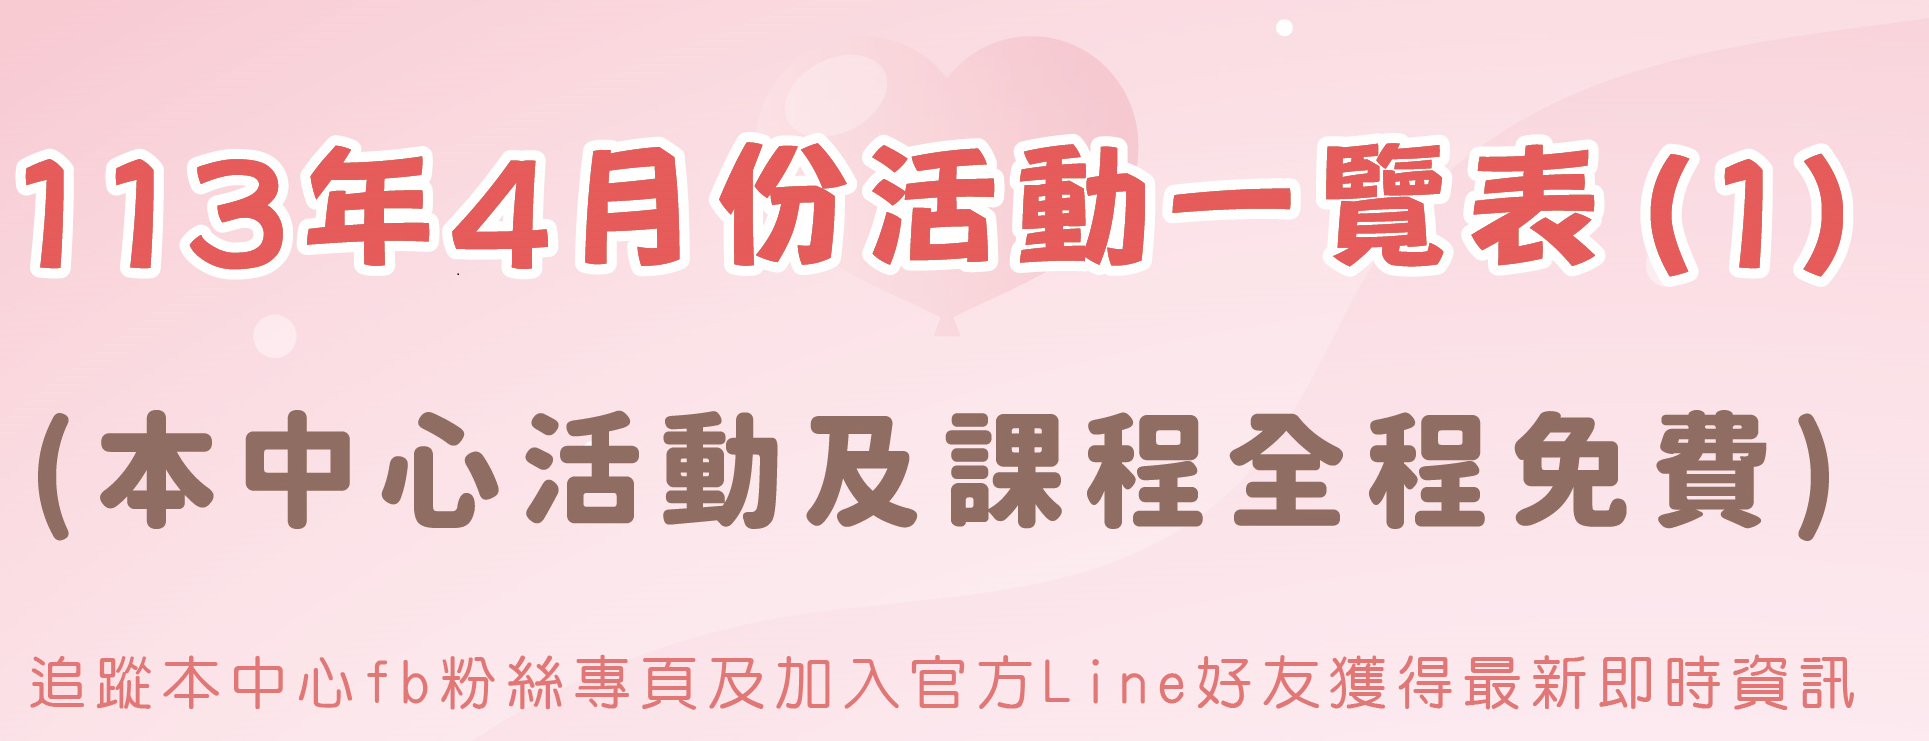 臺中市家庭教育中心4月份活動一覽表